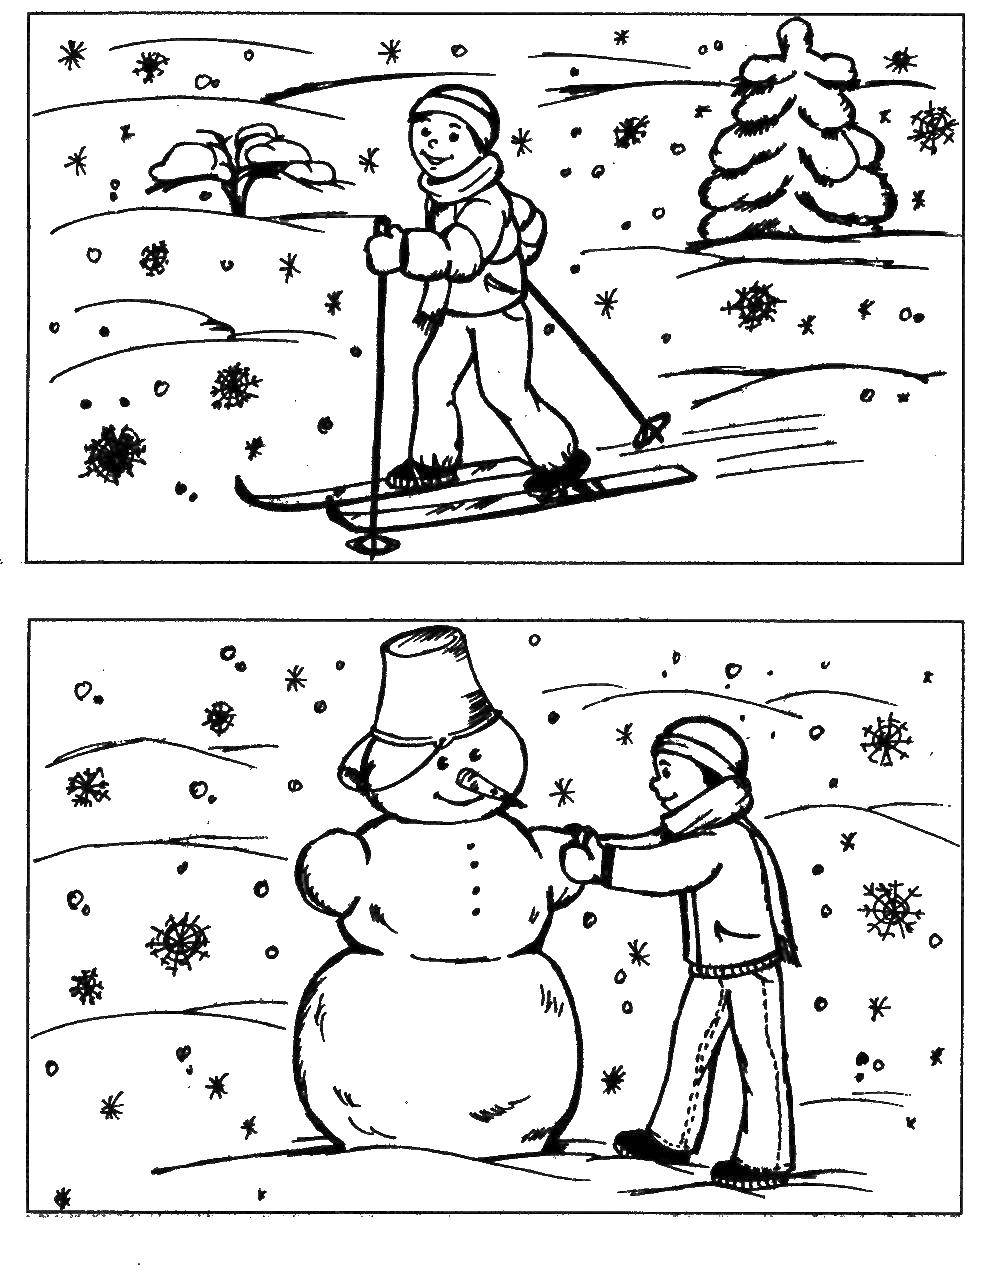  Мальчик катается на лыжах, а затем лепит снеговика